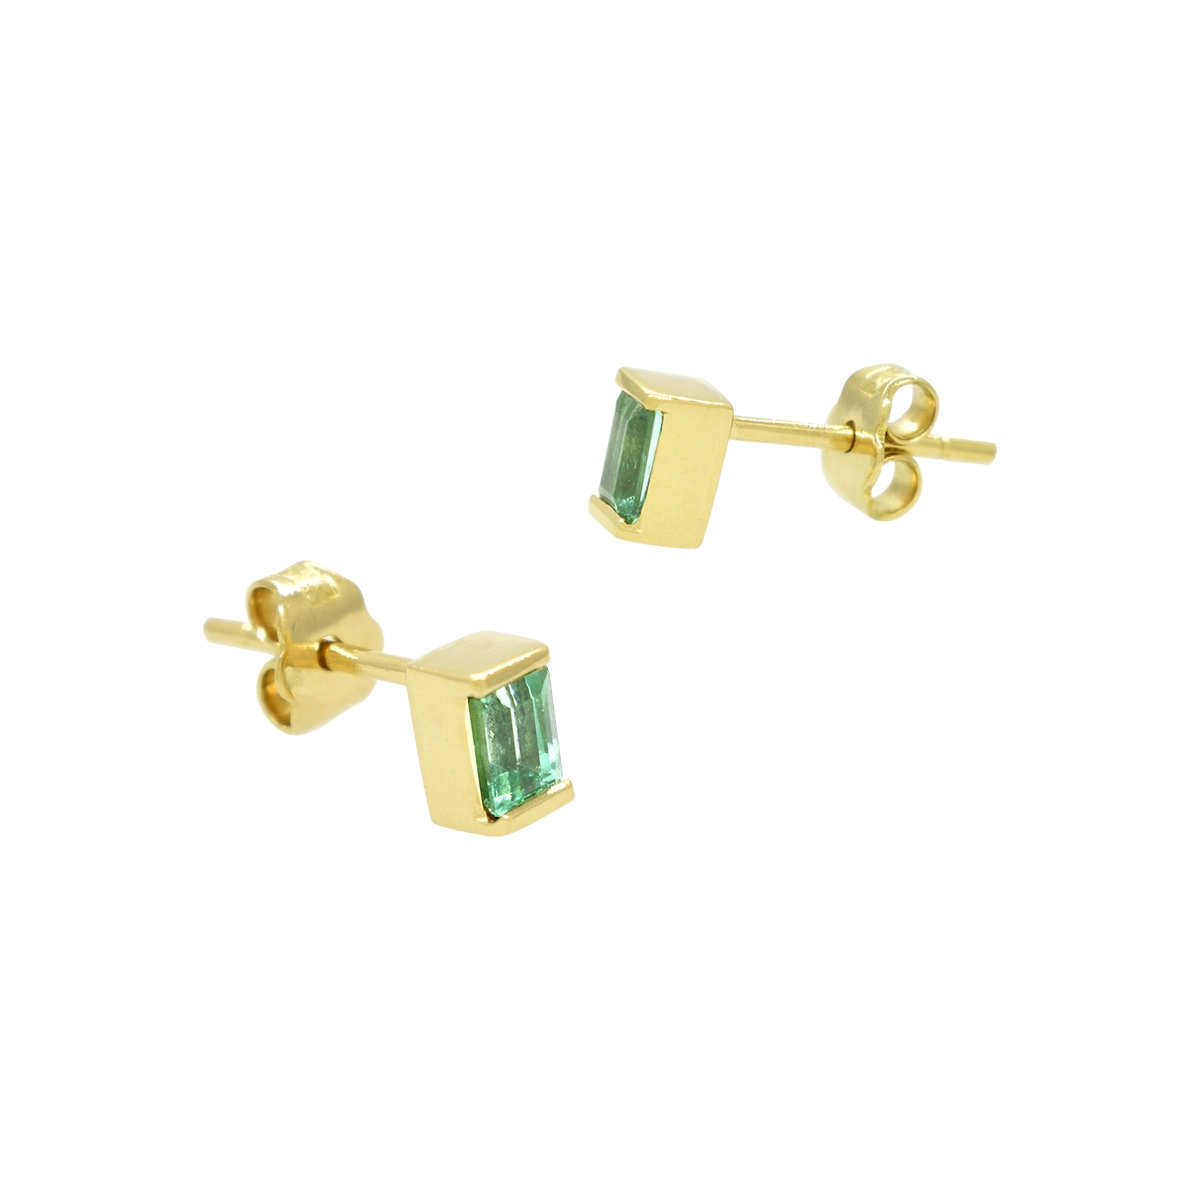 Small Emerald Cut Emerald Earrings in 18K Gold Half a Bezel Setting